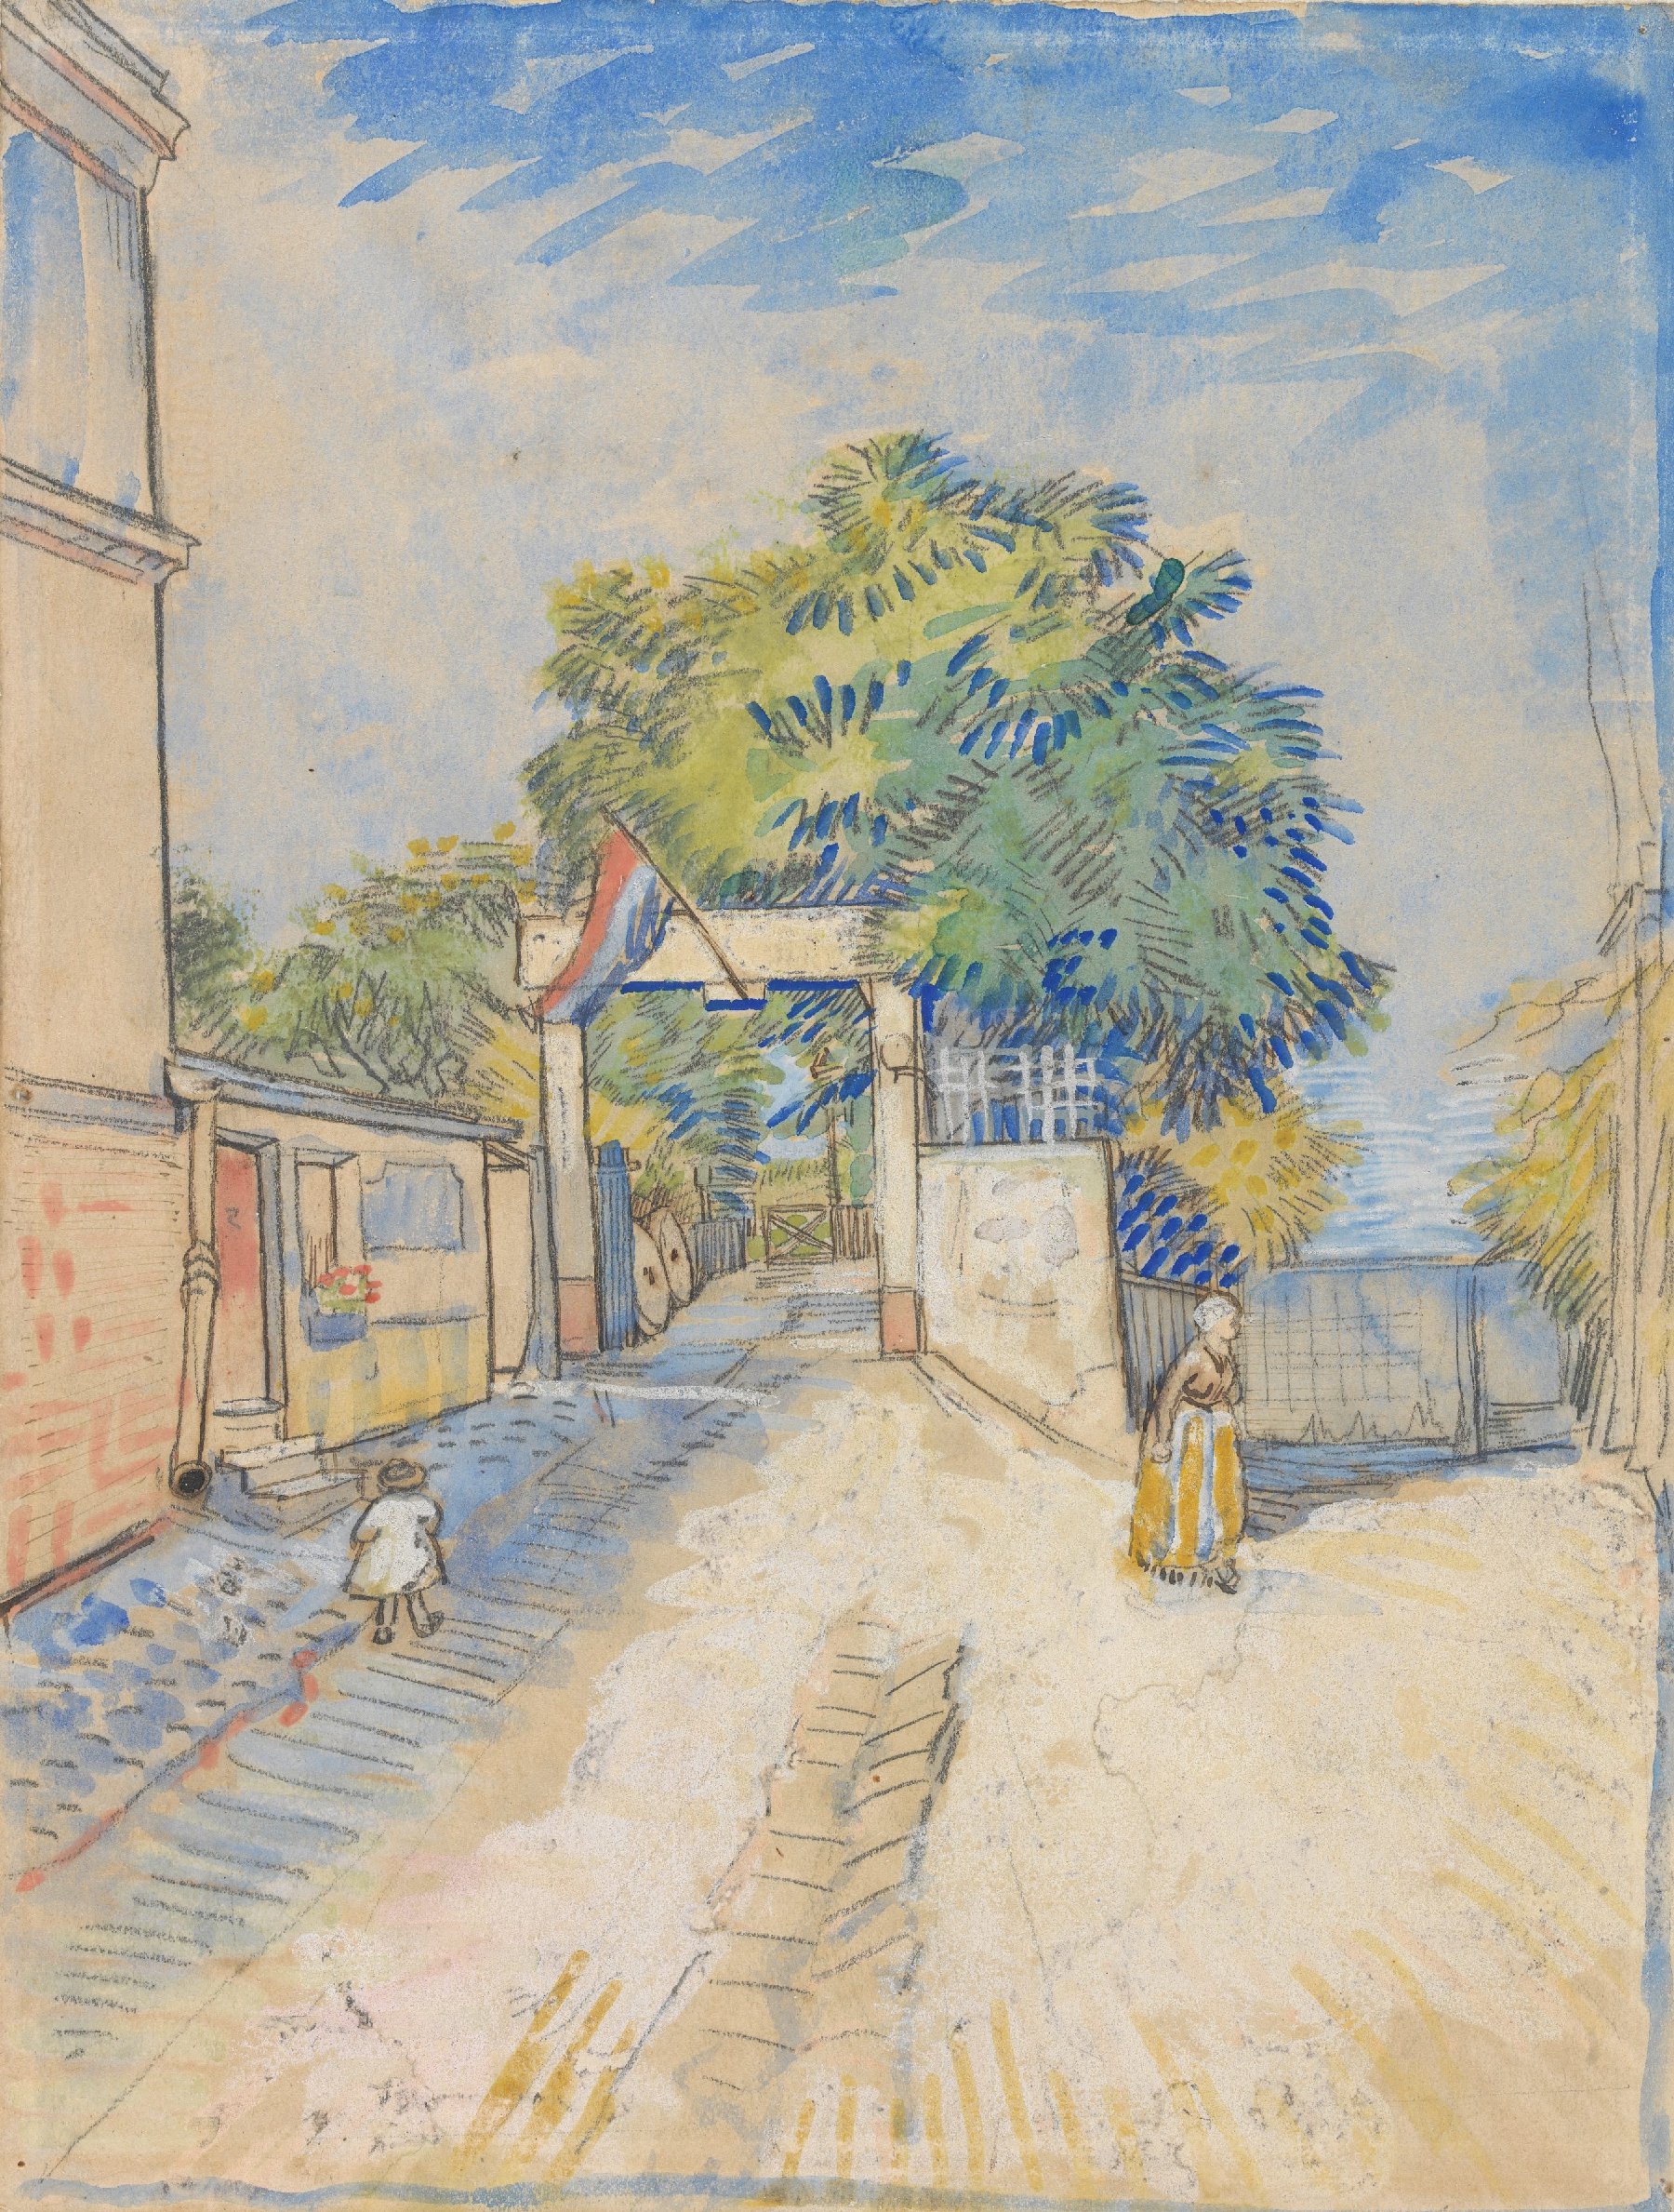 Toegangspoort van de Moulin de la Galette Vincent van Gogh (1853 - 1890), Parijs, juni-september 1887